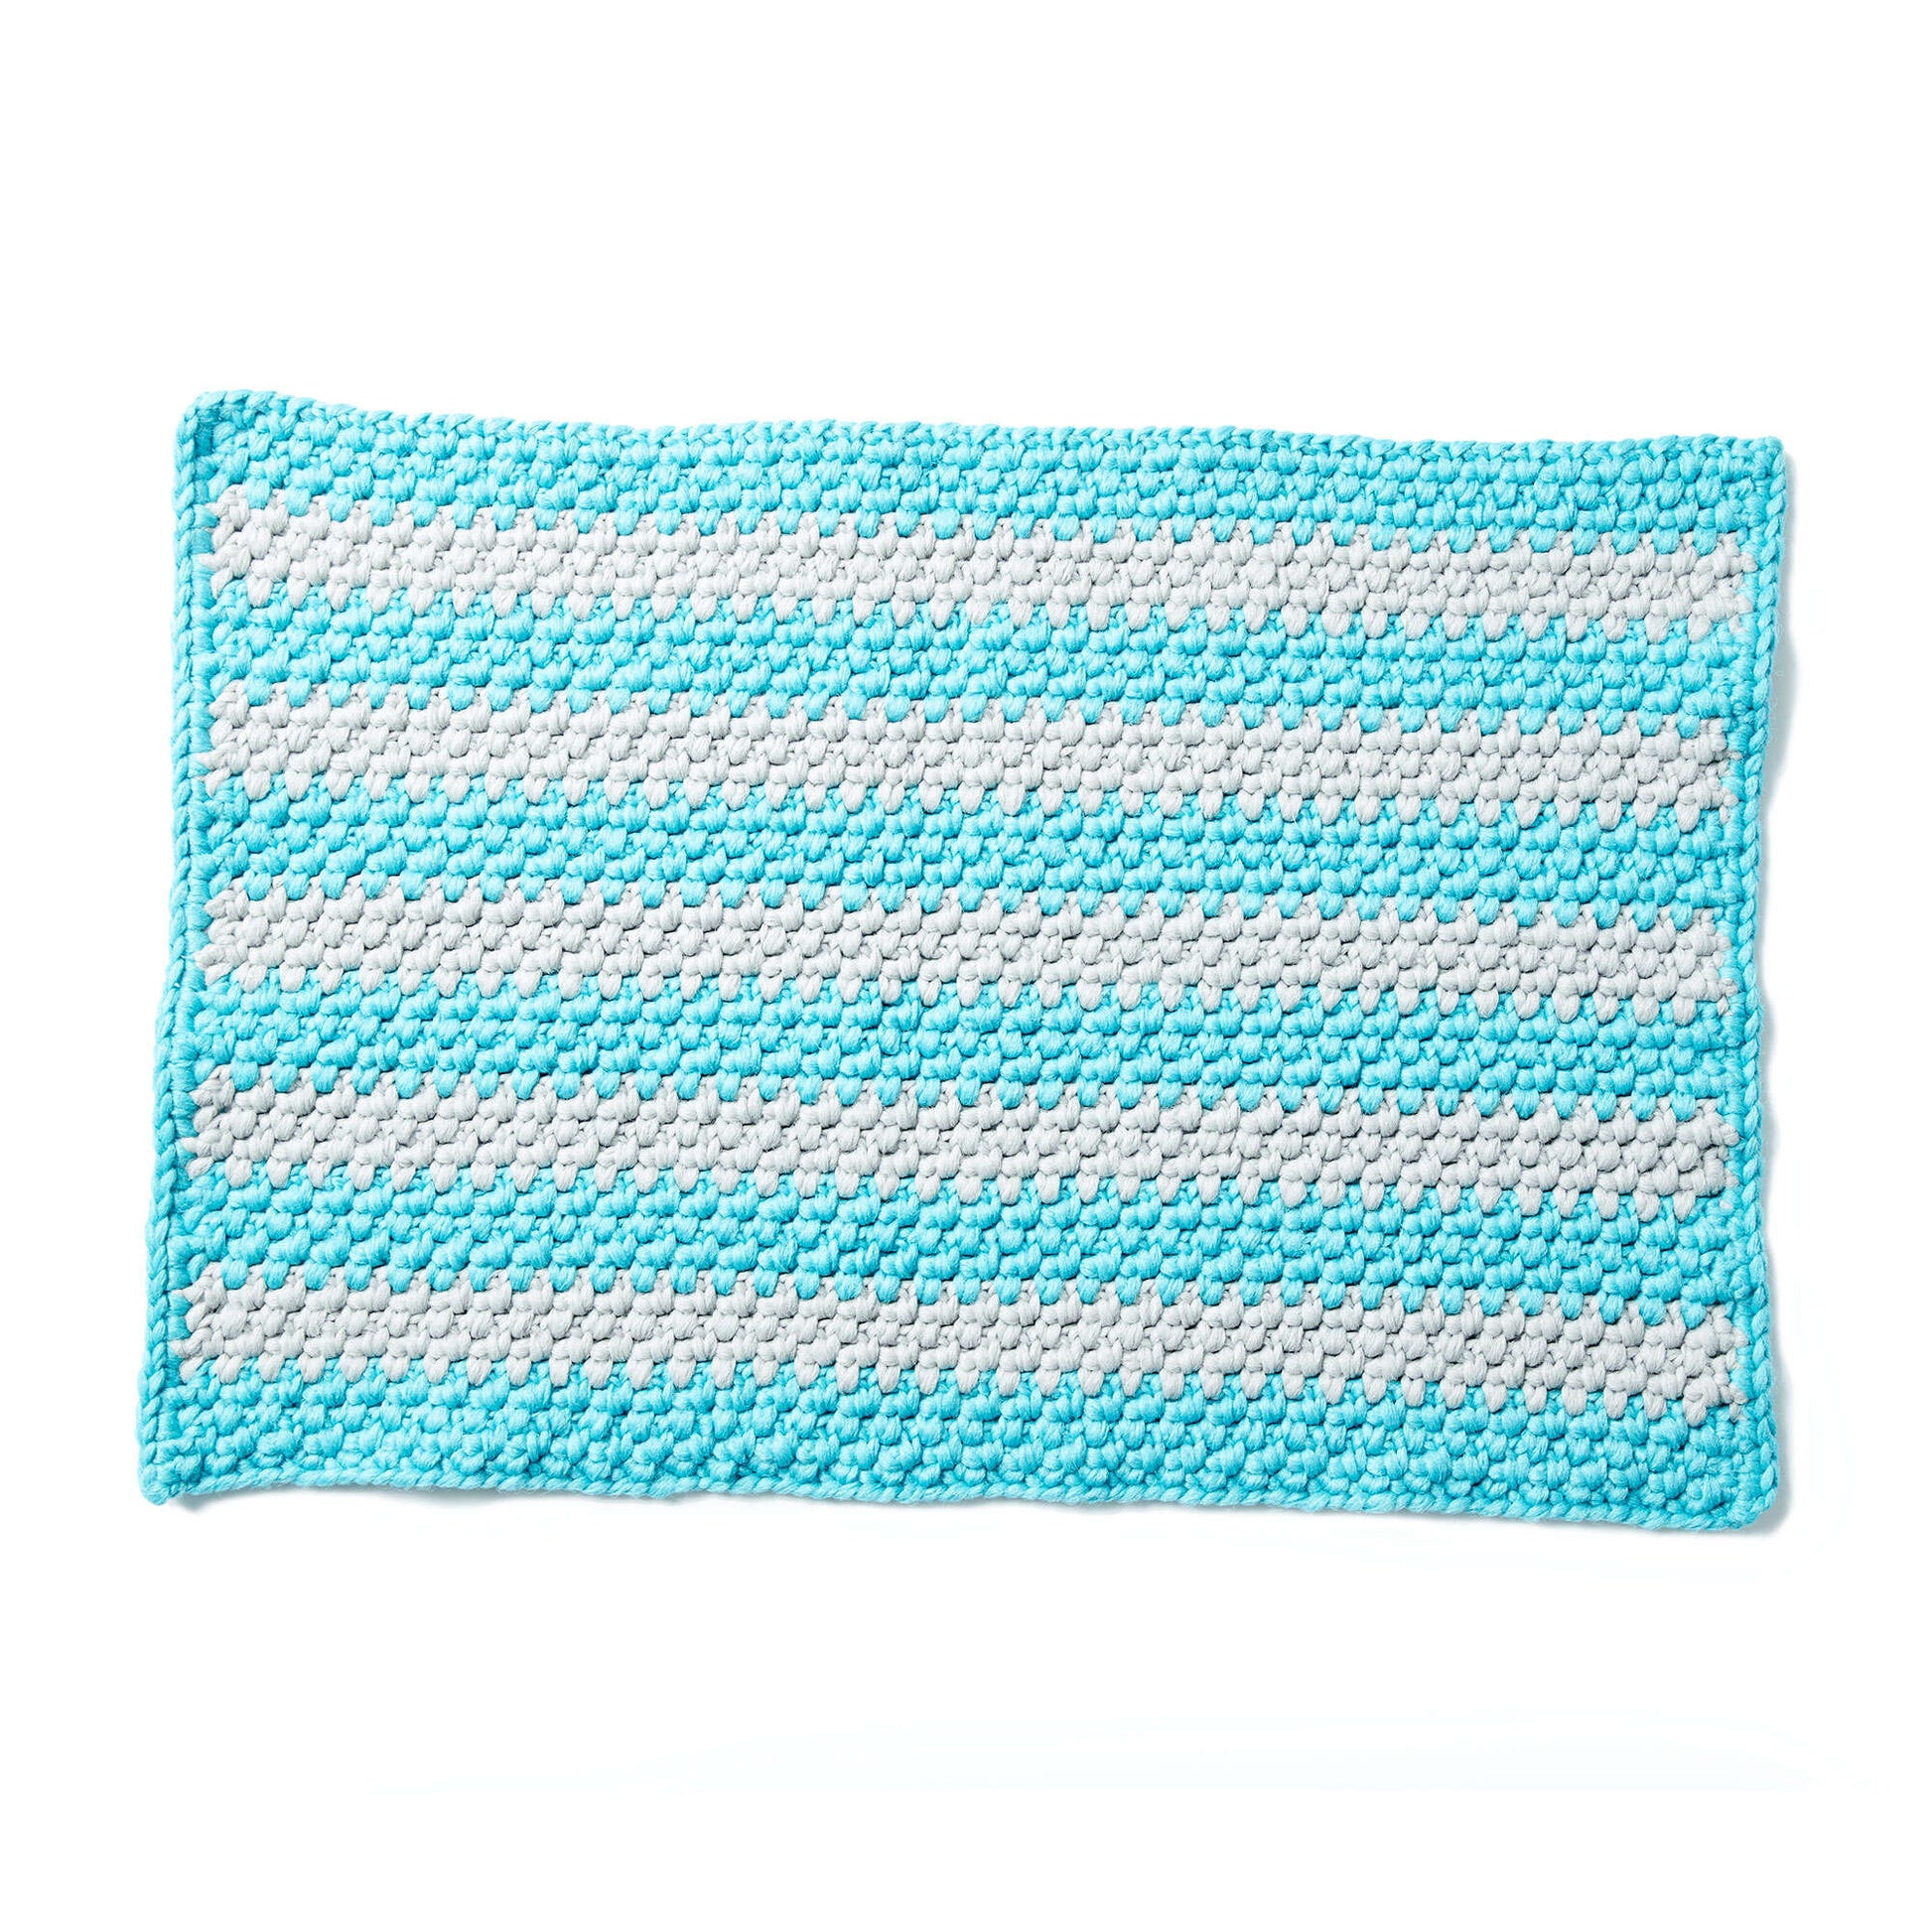 Free Phentex Crochet Outdoor Mat Pattern